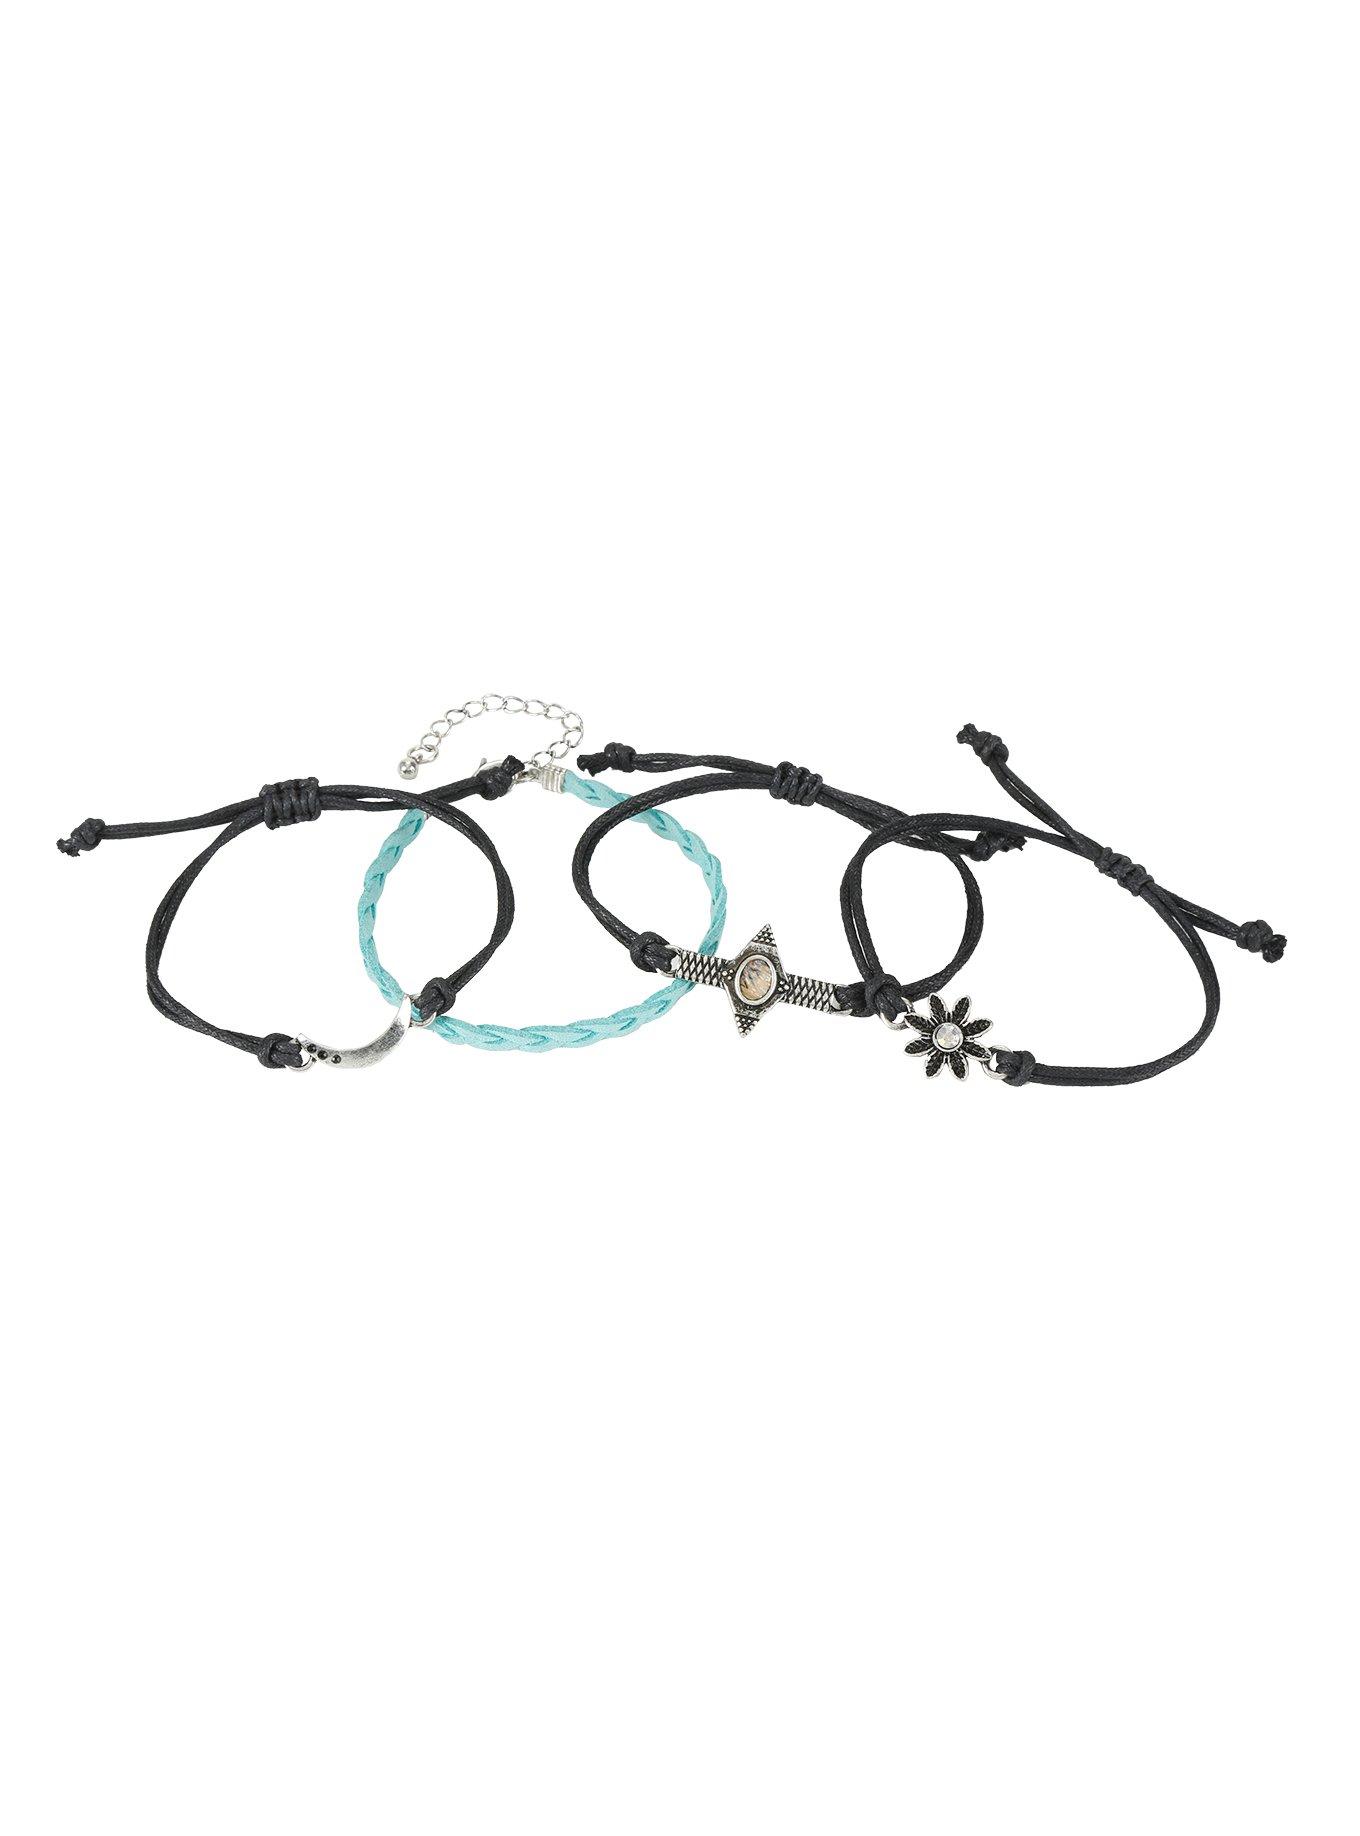 Blackheart Flower & Moon Teal Cord Bracelet Set, , alternate